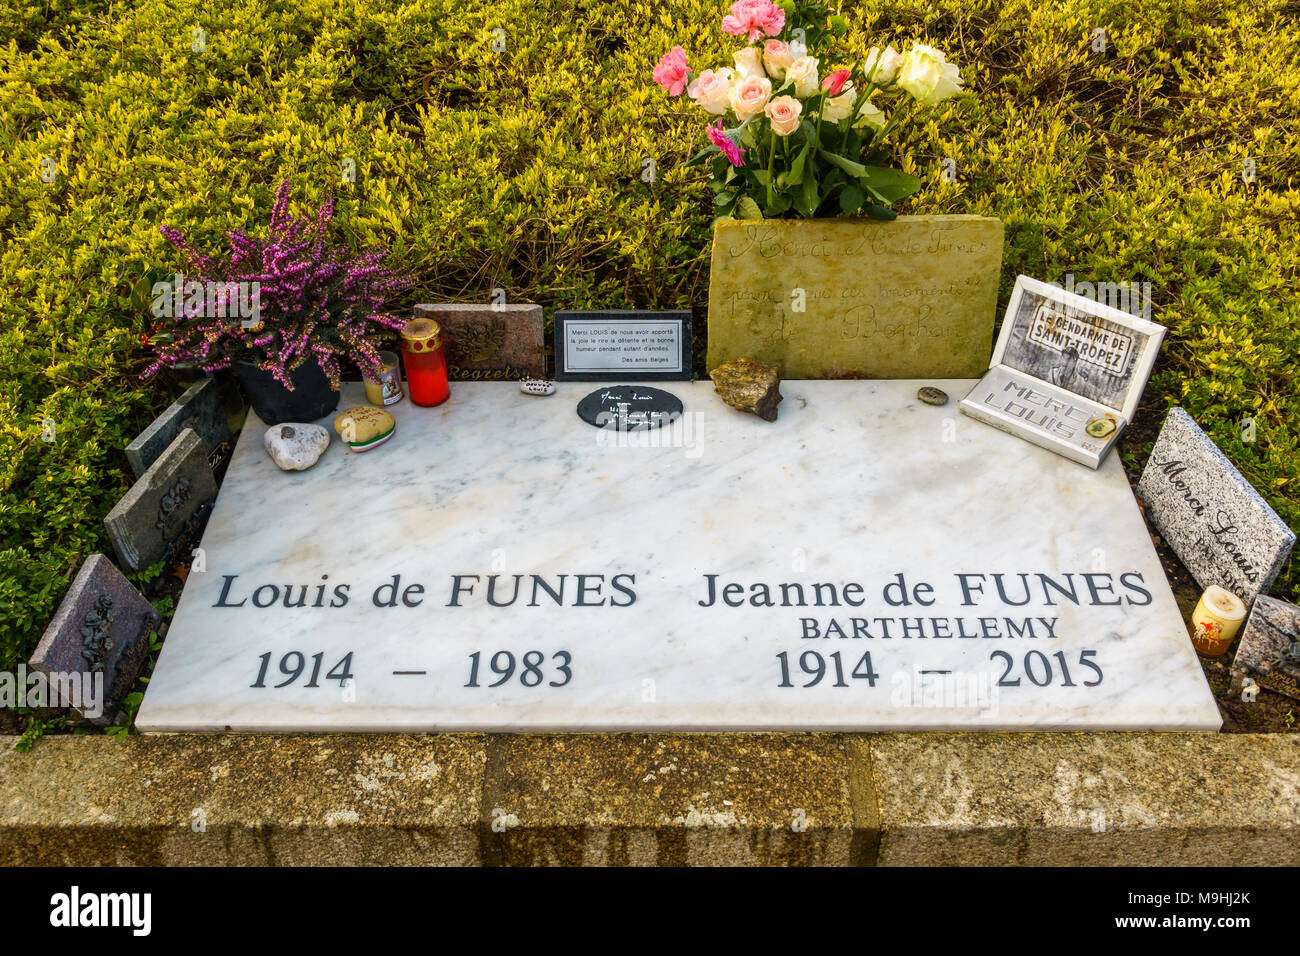 LE CELLIER, FRANCE - CIRCA JANUARY 2018: Louis de Funès grave. Louis de Funès was a famous French actor. Stock Photo